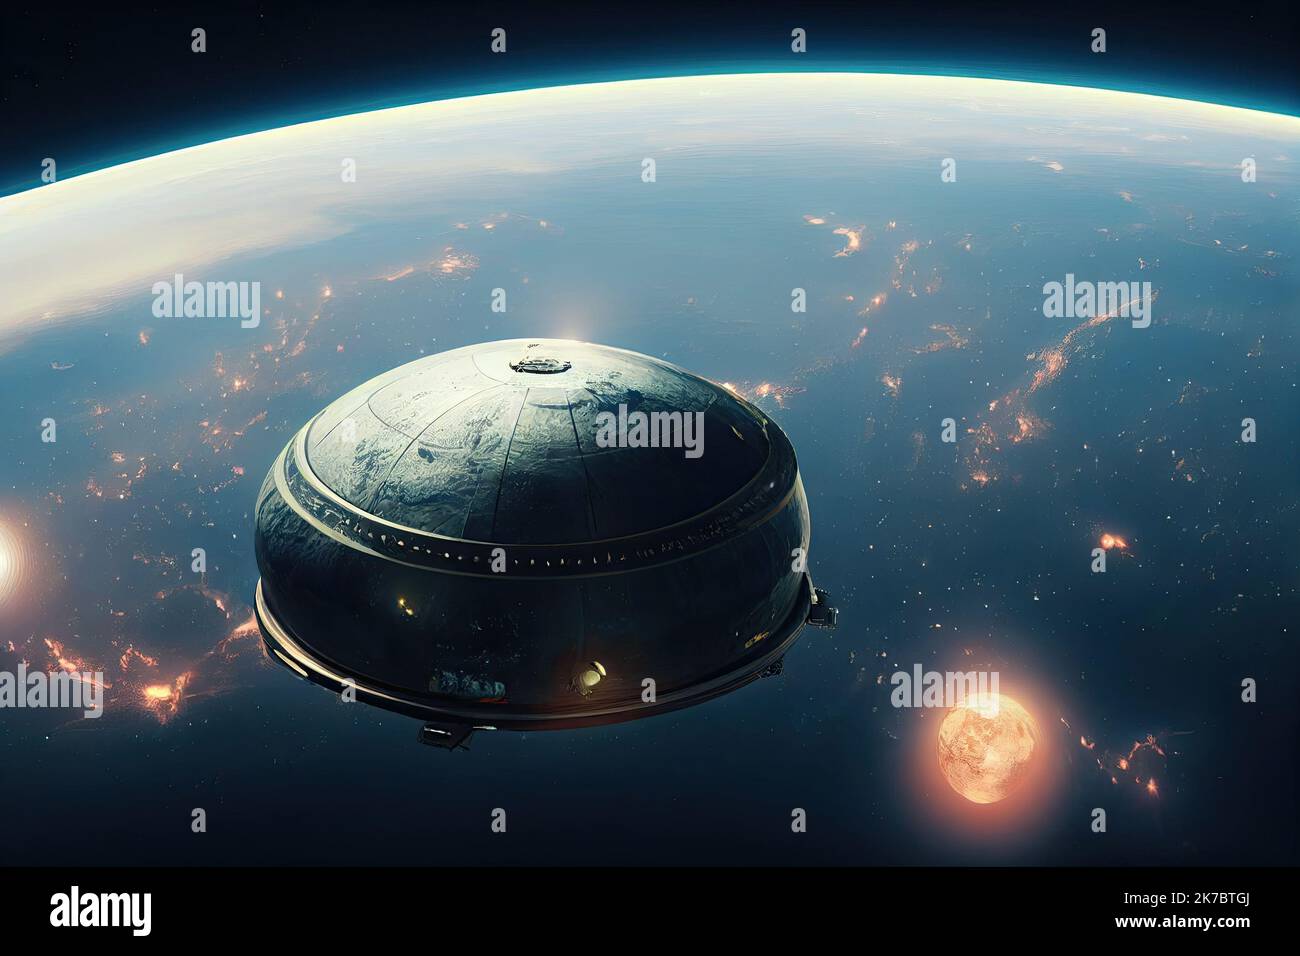 Alien-Raumschiff im Weltraum. UFO, nicht identifiziertes fliegendes Objekt, hoch oben am Himmel. Konzept von Alien-Invasion und außerirdischem Leben. Stockfoto